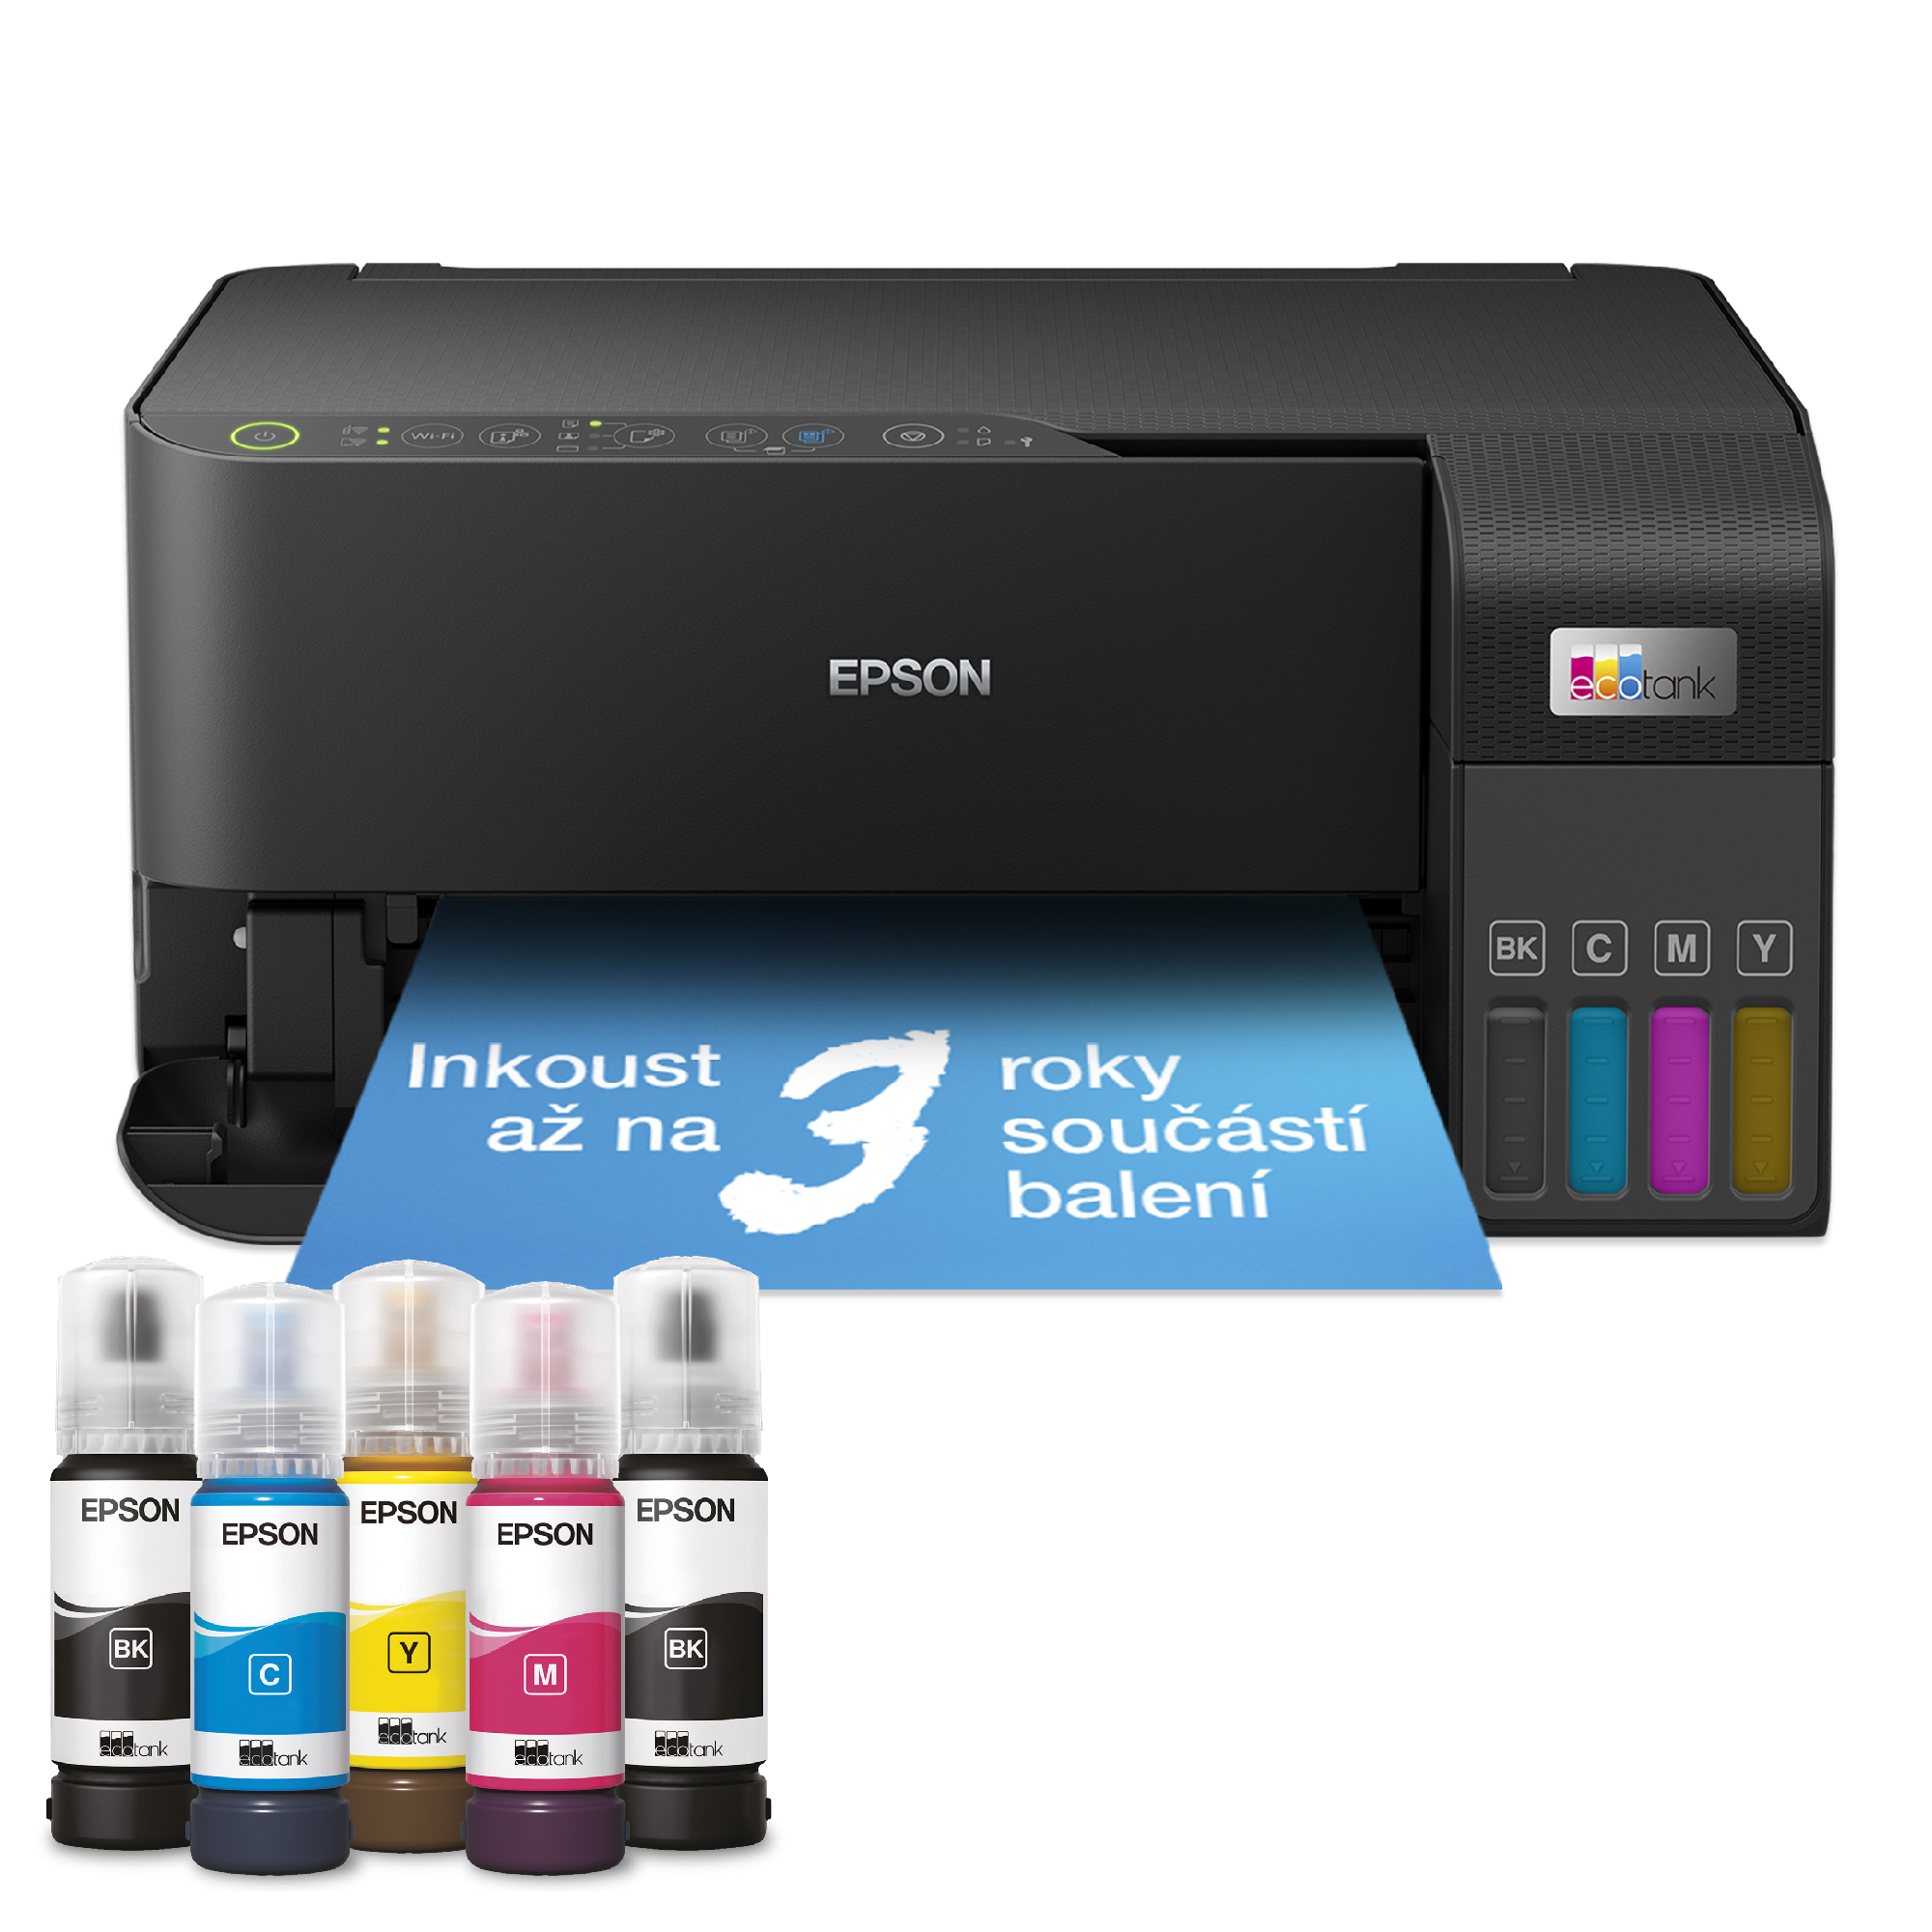 Obrázek Epson EcoTank/L3550/MF/Ink/A4/WiFi/USB